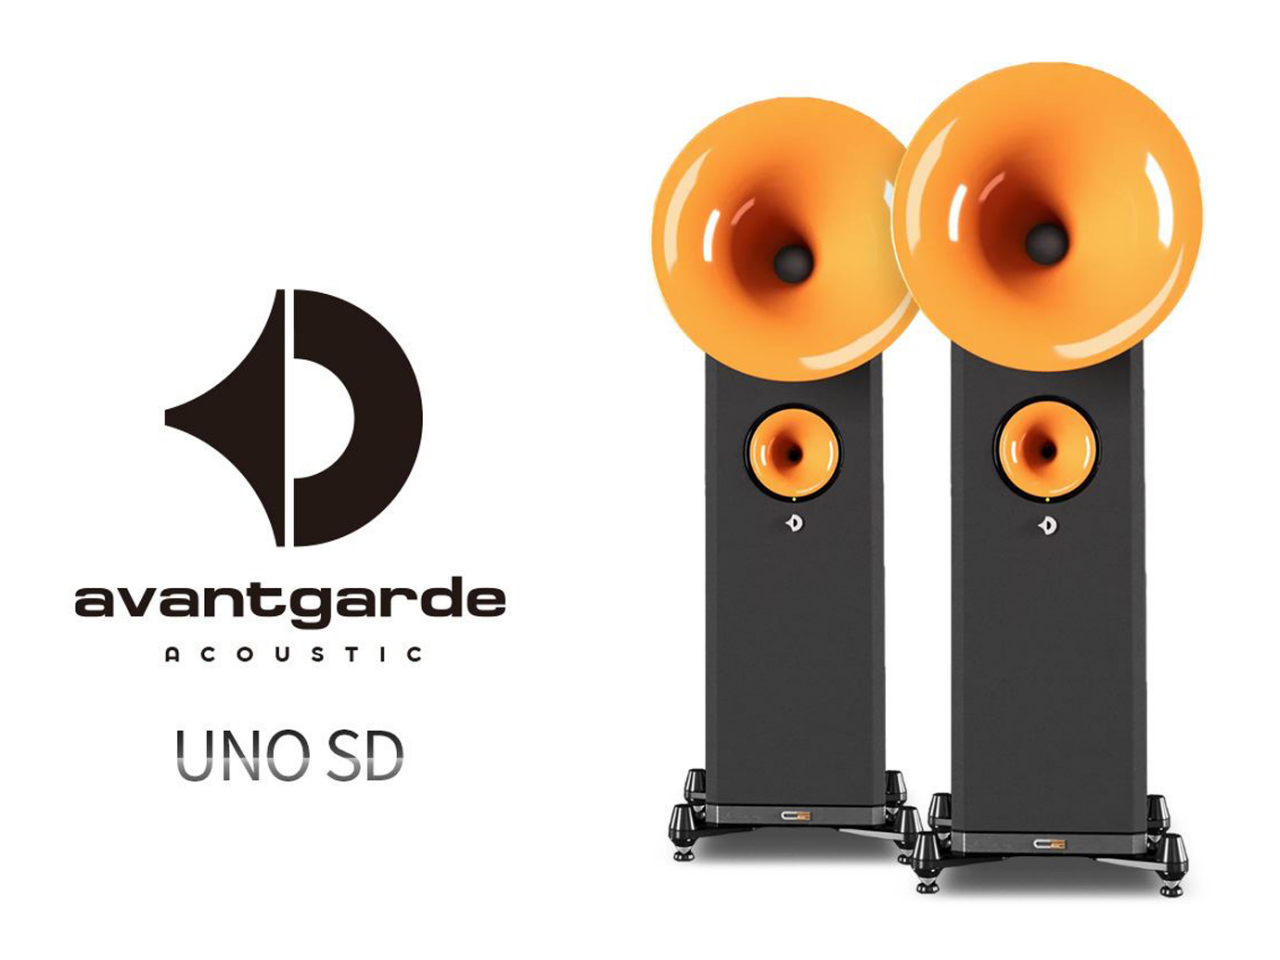 풀 액티브 혼 스피커의 소름돋는 사운드Avantgarde Acoustic(아방가르드 어쿠스틱) UNO SD